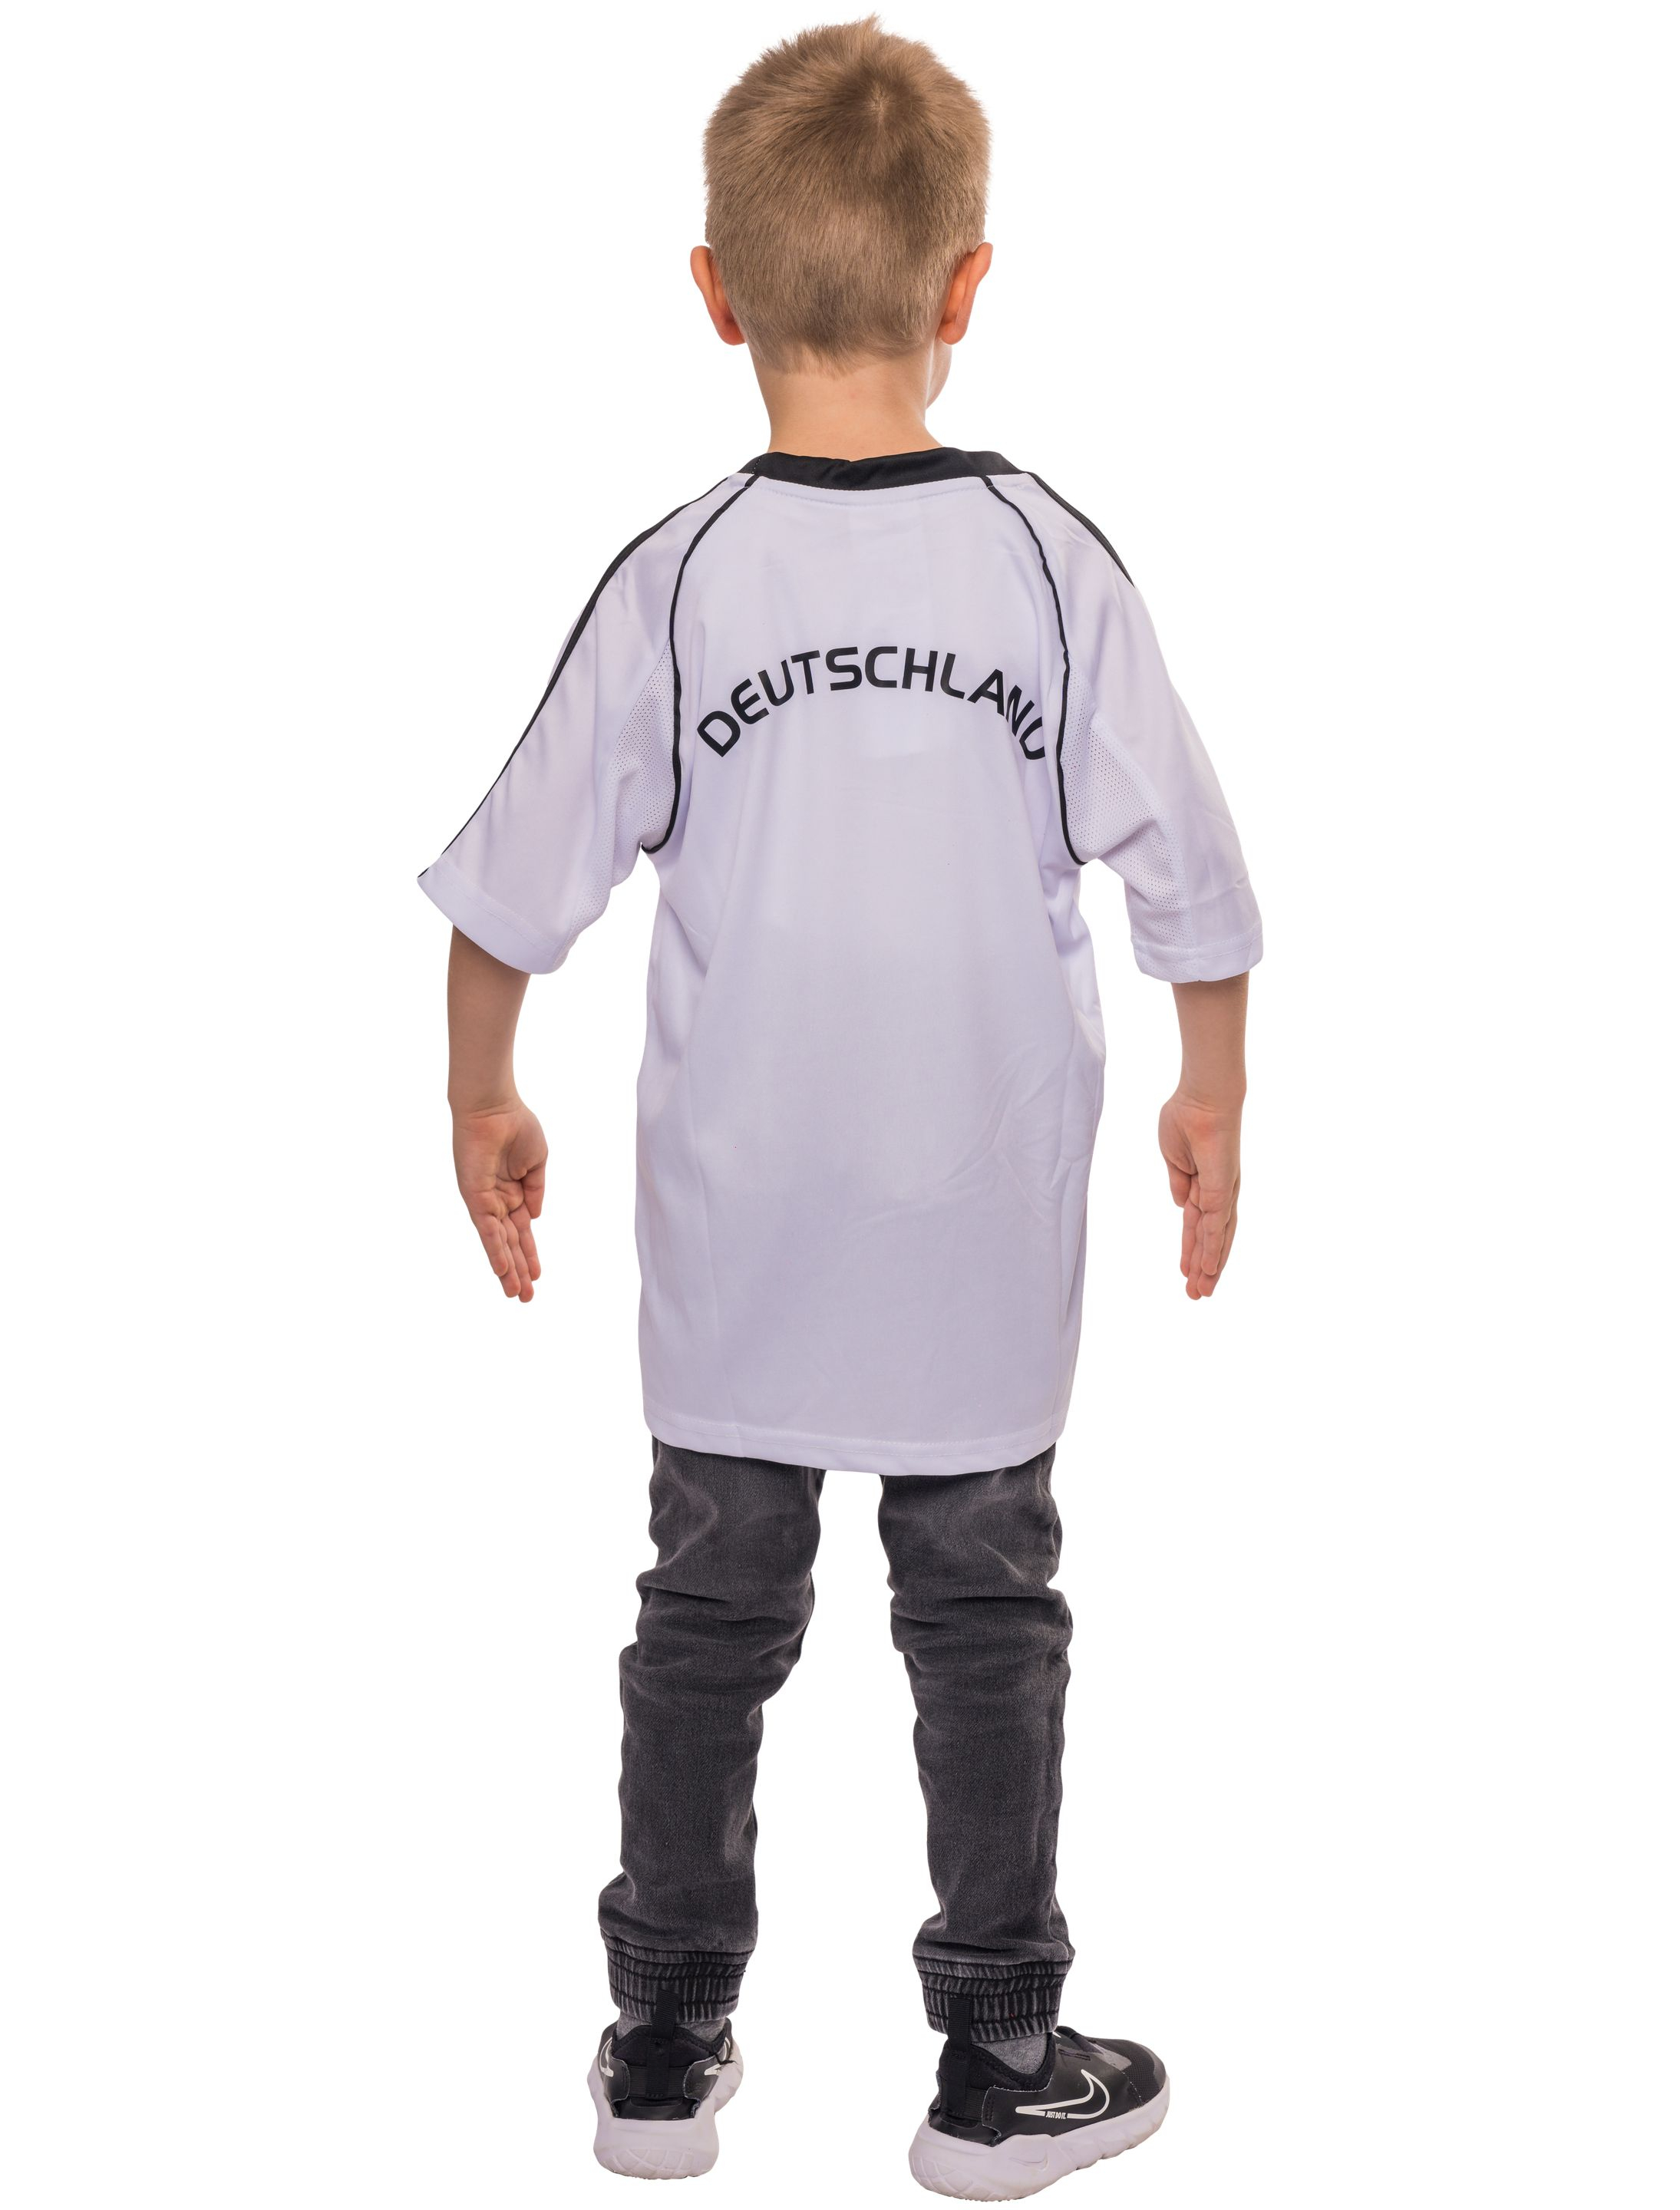 T-Shirt Deutschland Trikot Kinder weiß 2XL